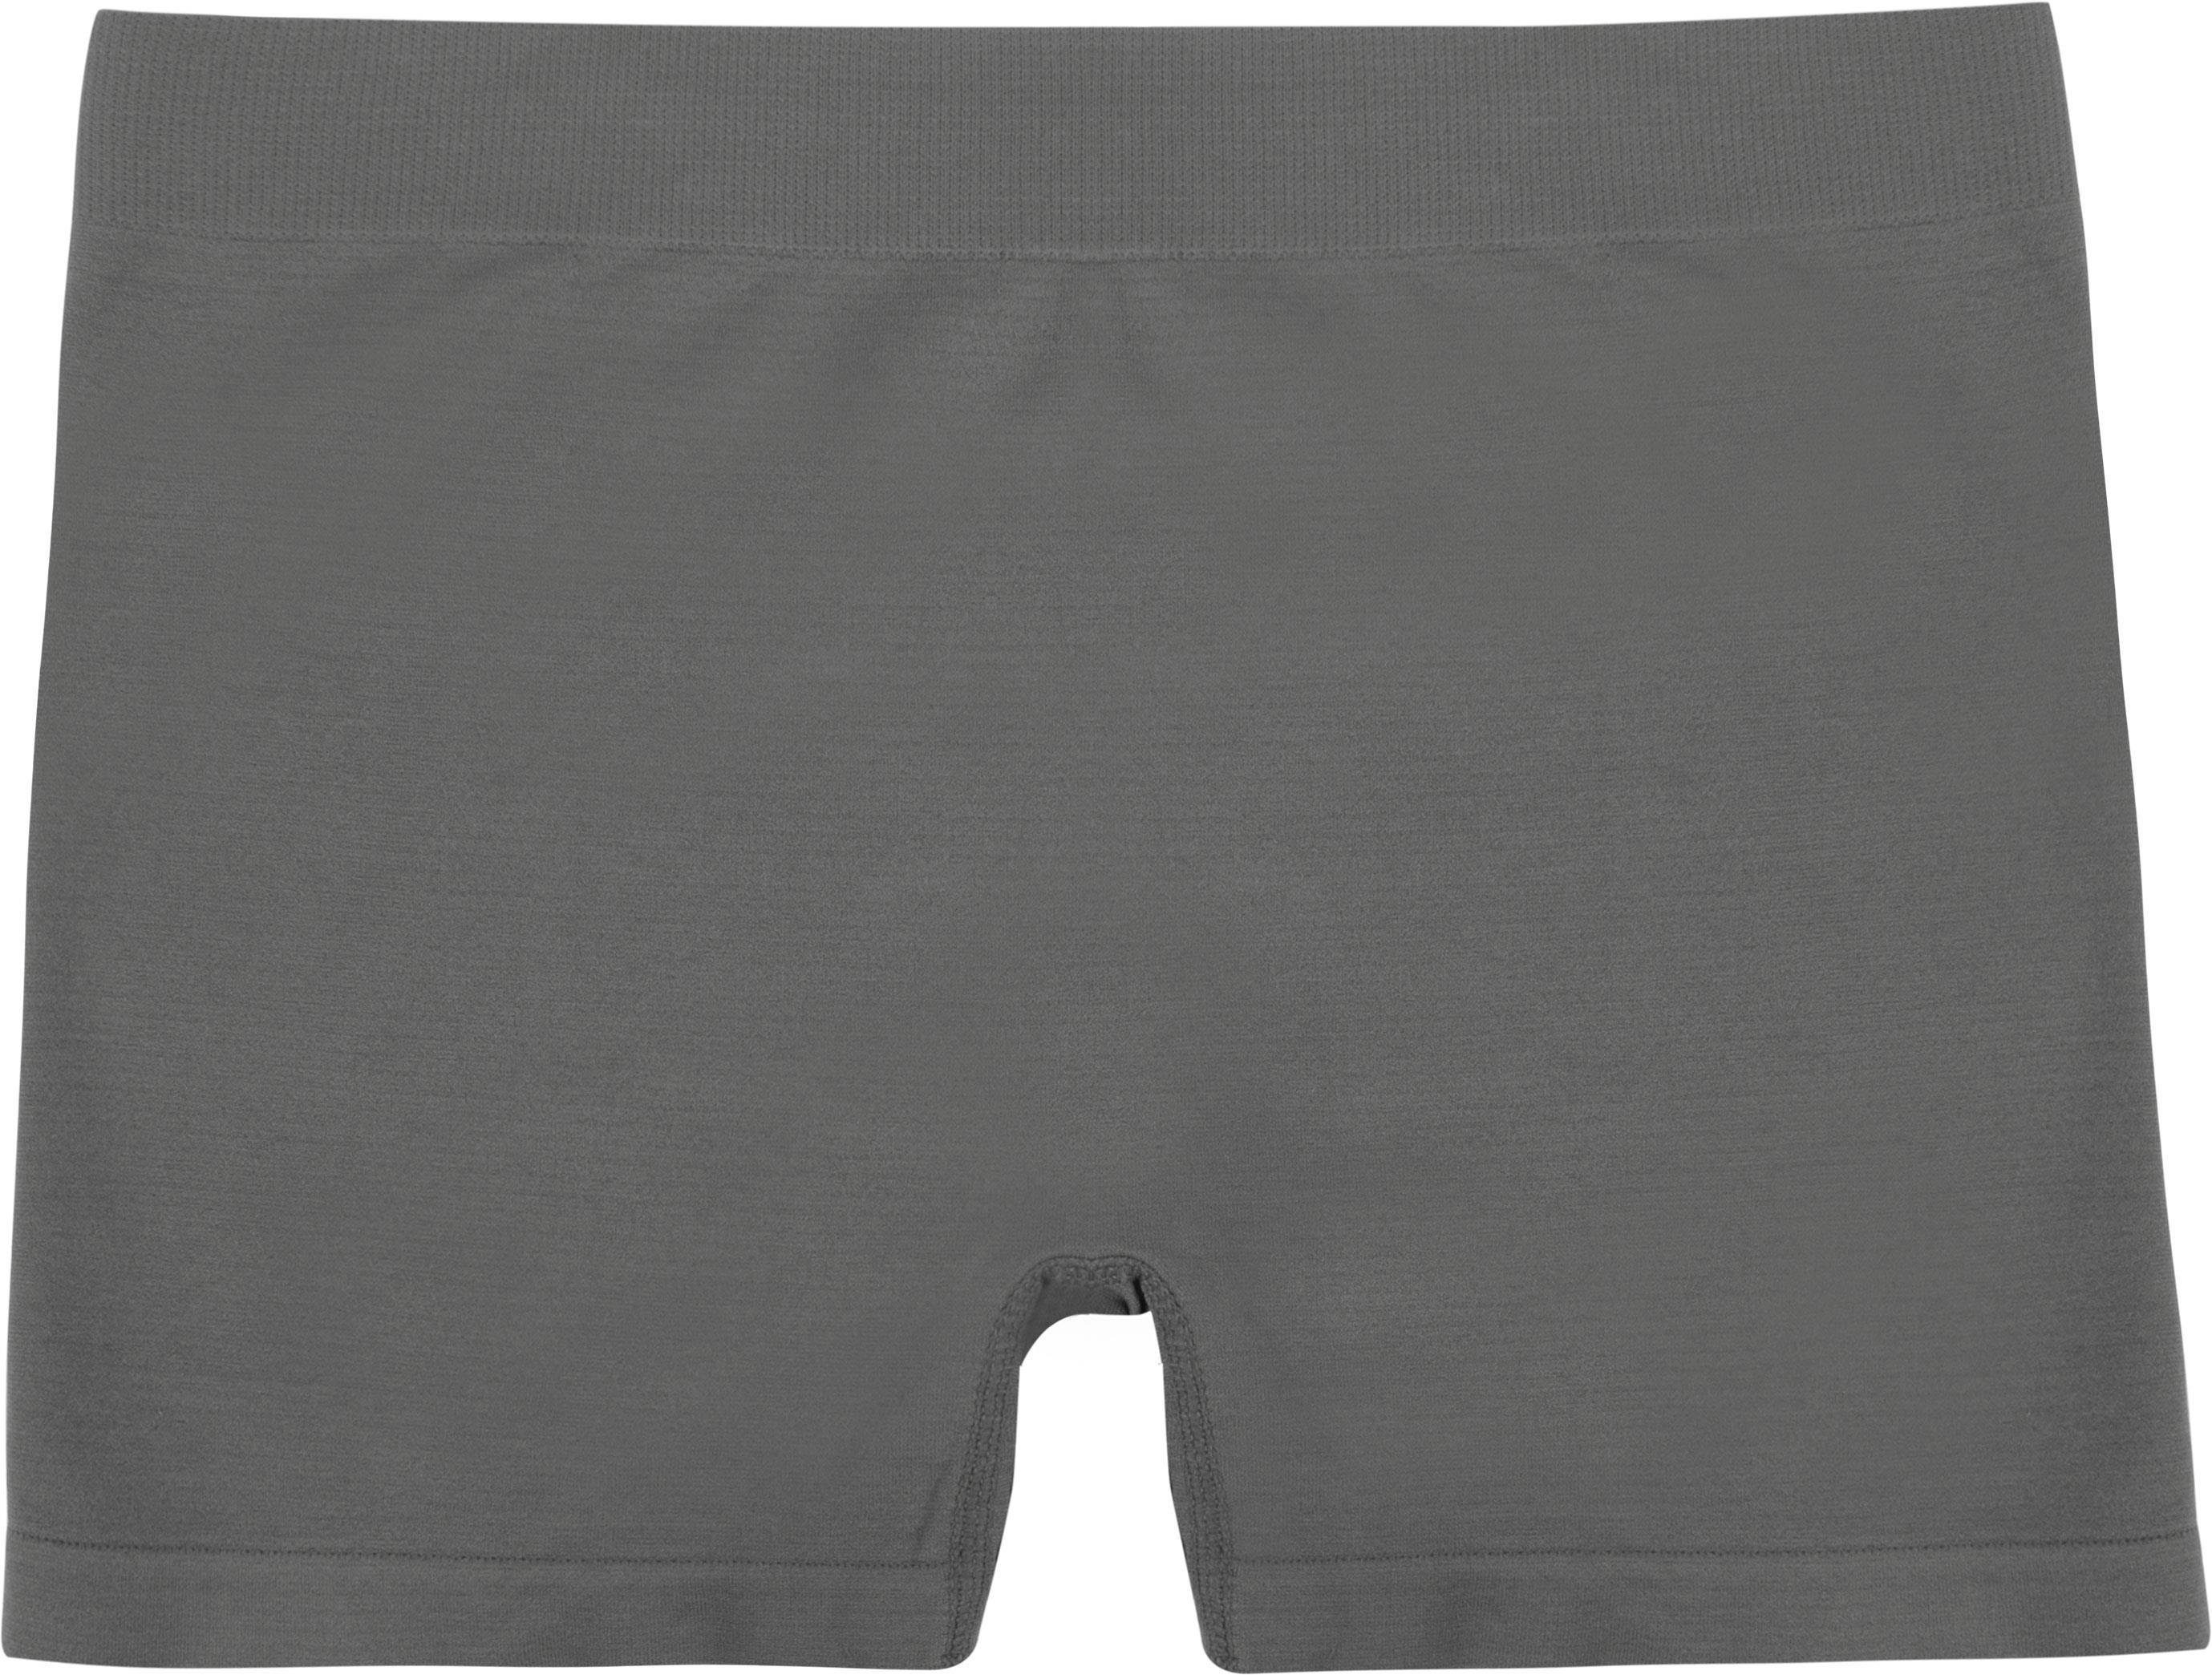 trocknendem Retropants Boxer Stück Grau normani Material Retro aus schnell Männer Unterhosen für 12 Mikrofaser-Boxershorts Herren